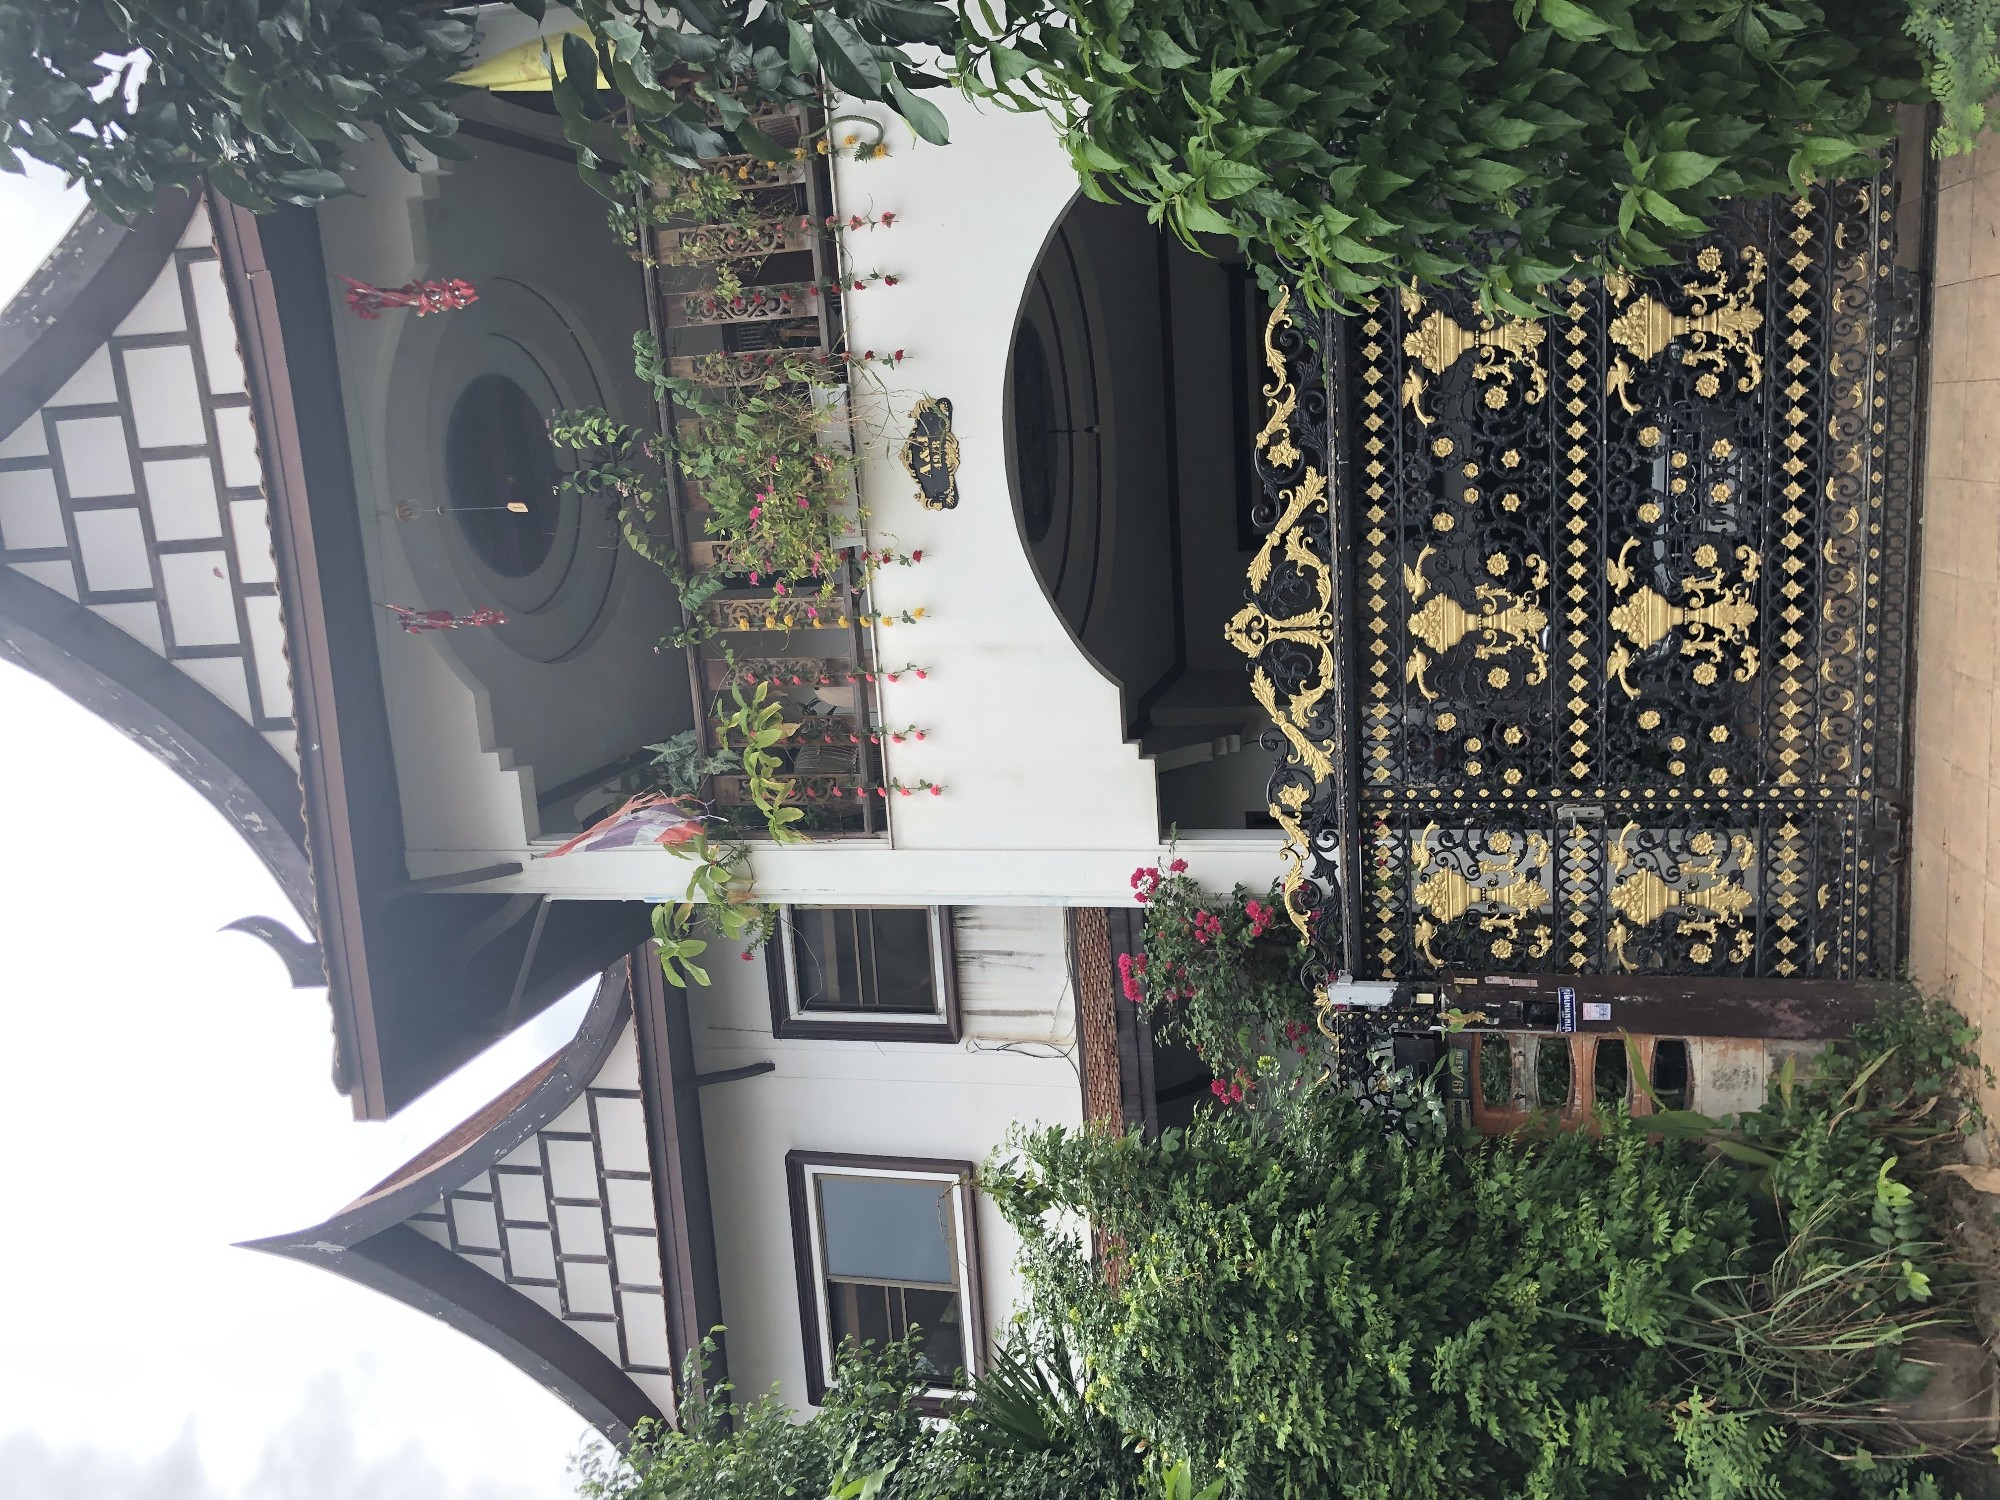 Продается дом в самом центре Паттайи на улице S.Pattaya road.